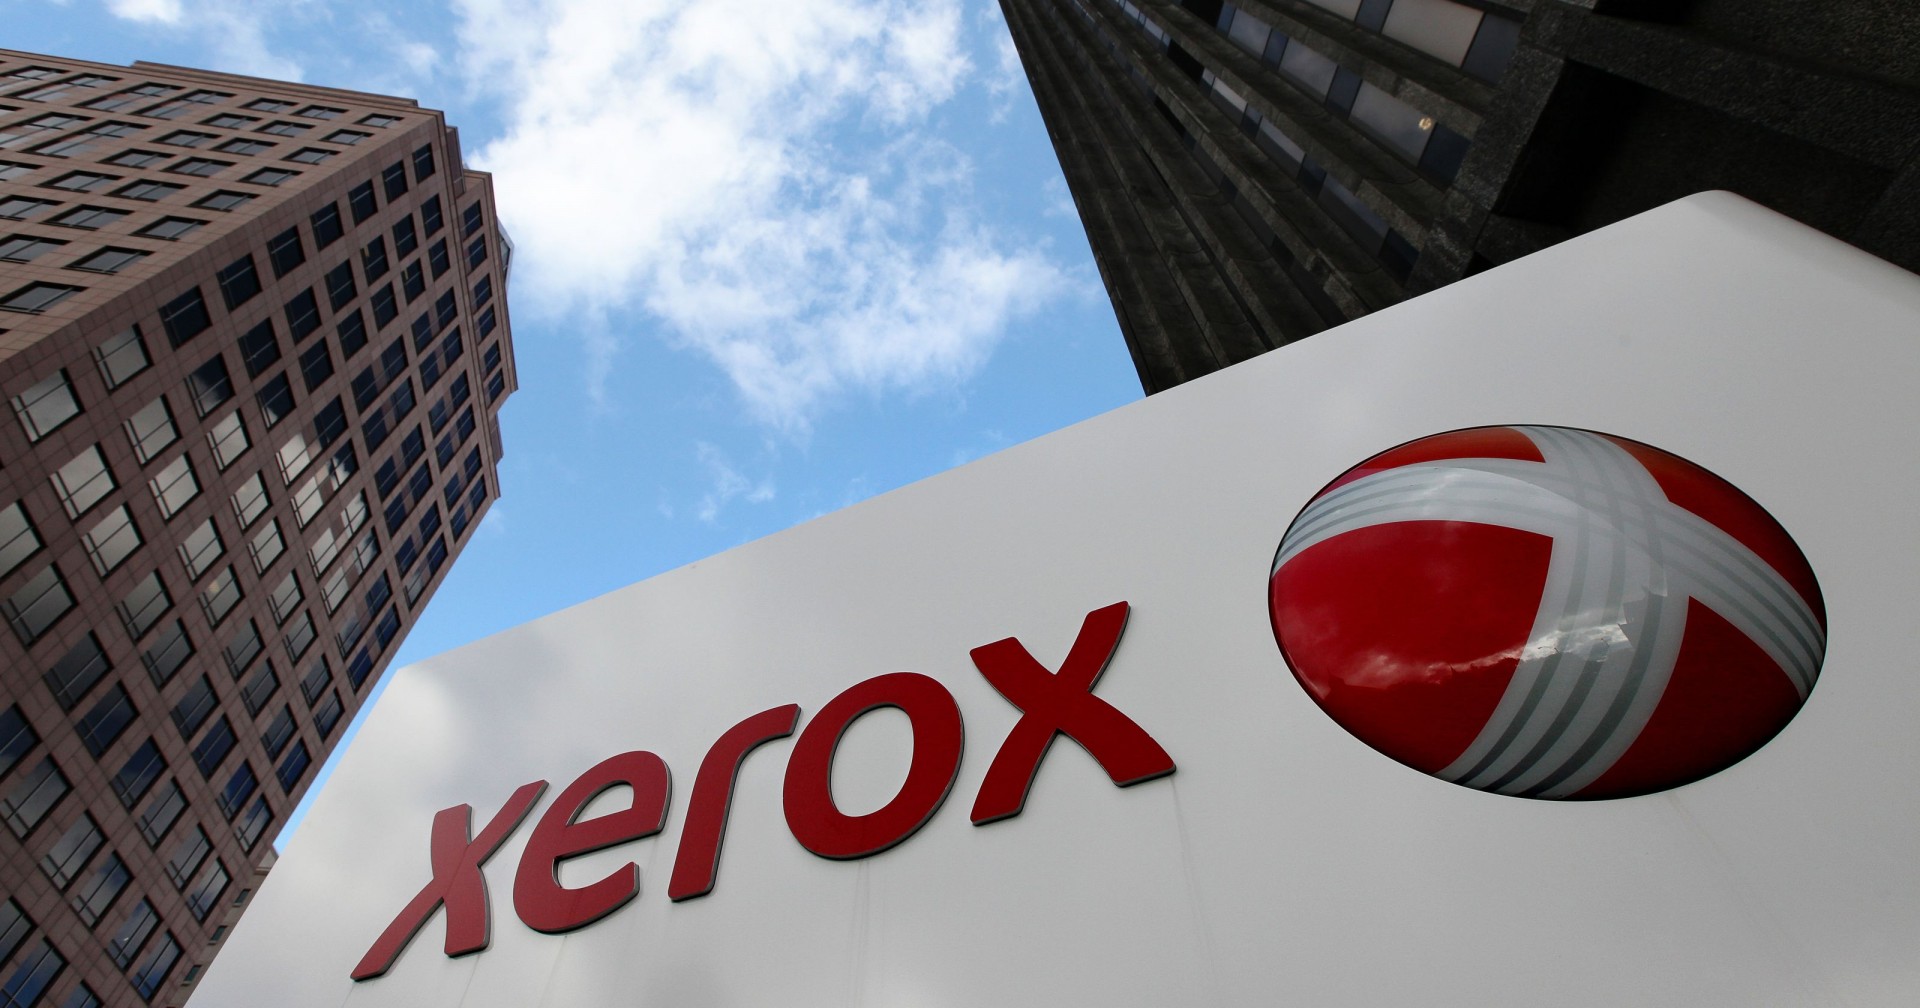 Xerox é a líder em serviços de impressão e documentos, segundo o IDC MarketScape; Empresa também recebeu prêmio de software do ano pela Keypoint Intelligence – Buyers Lab